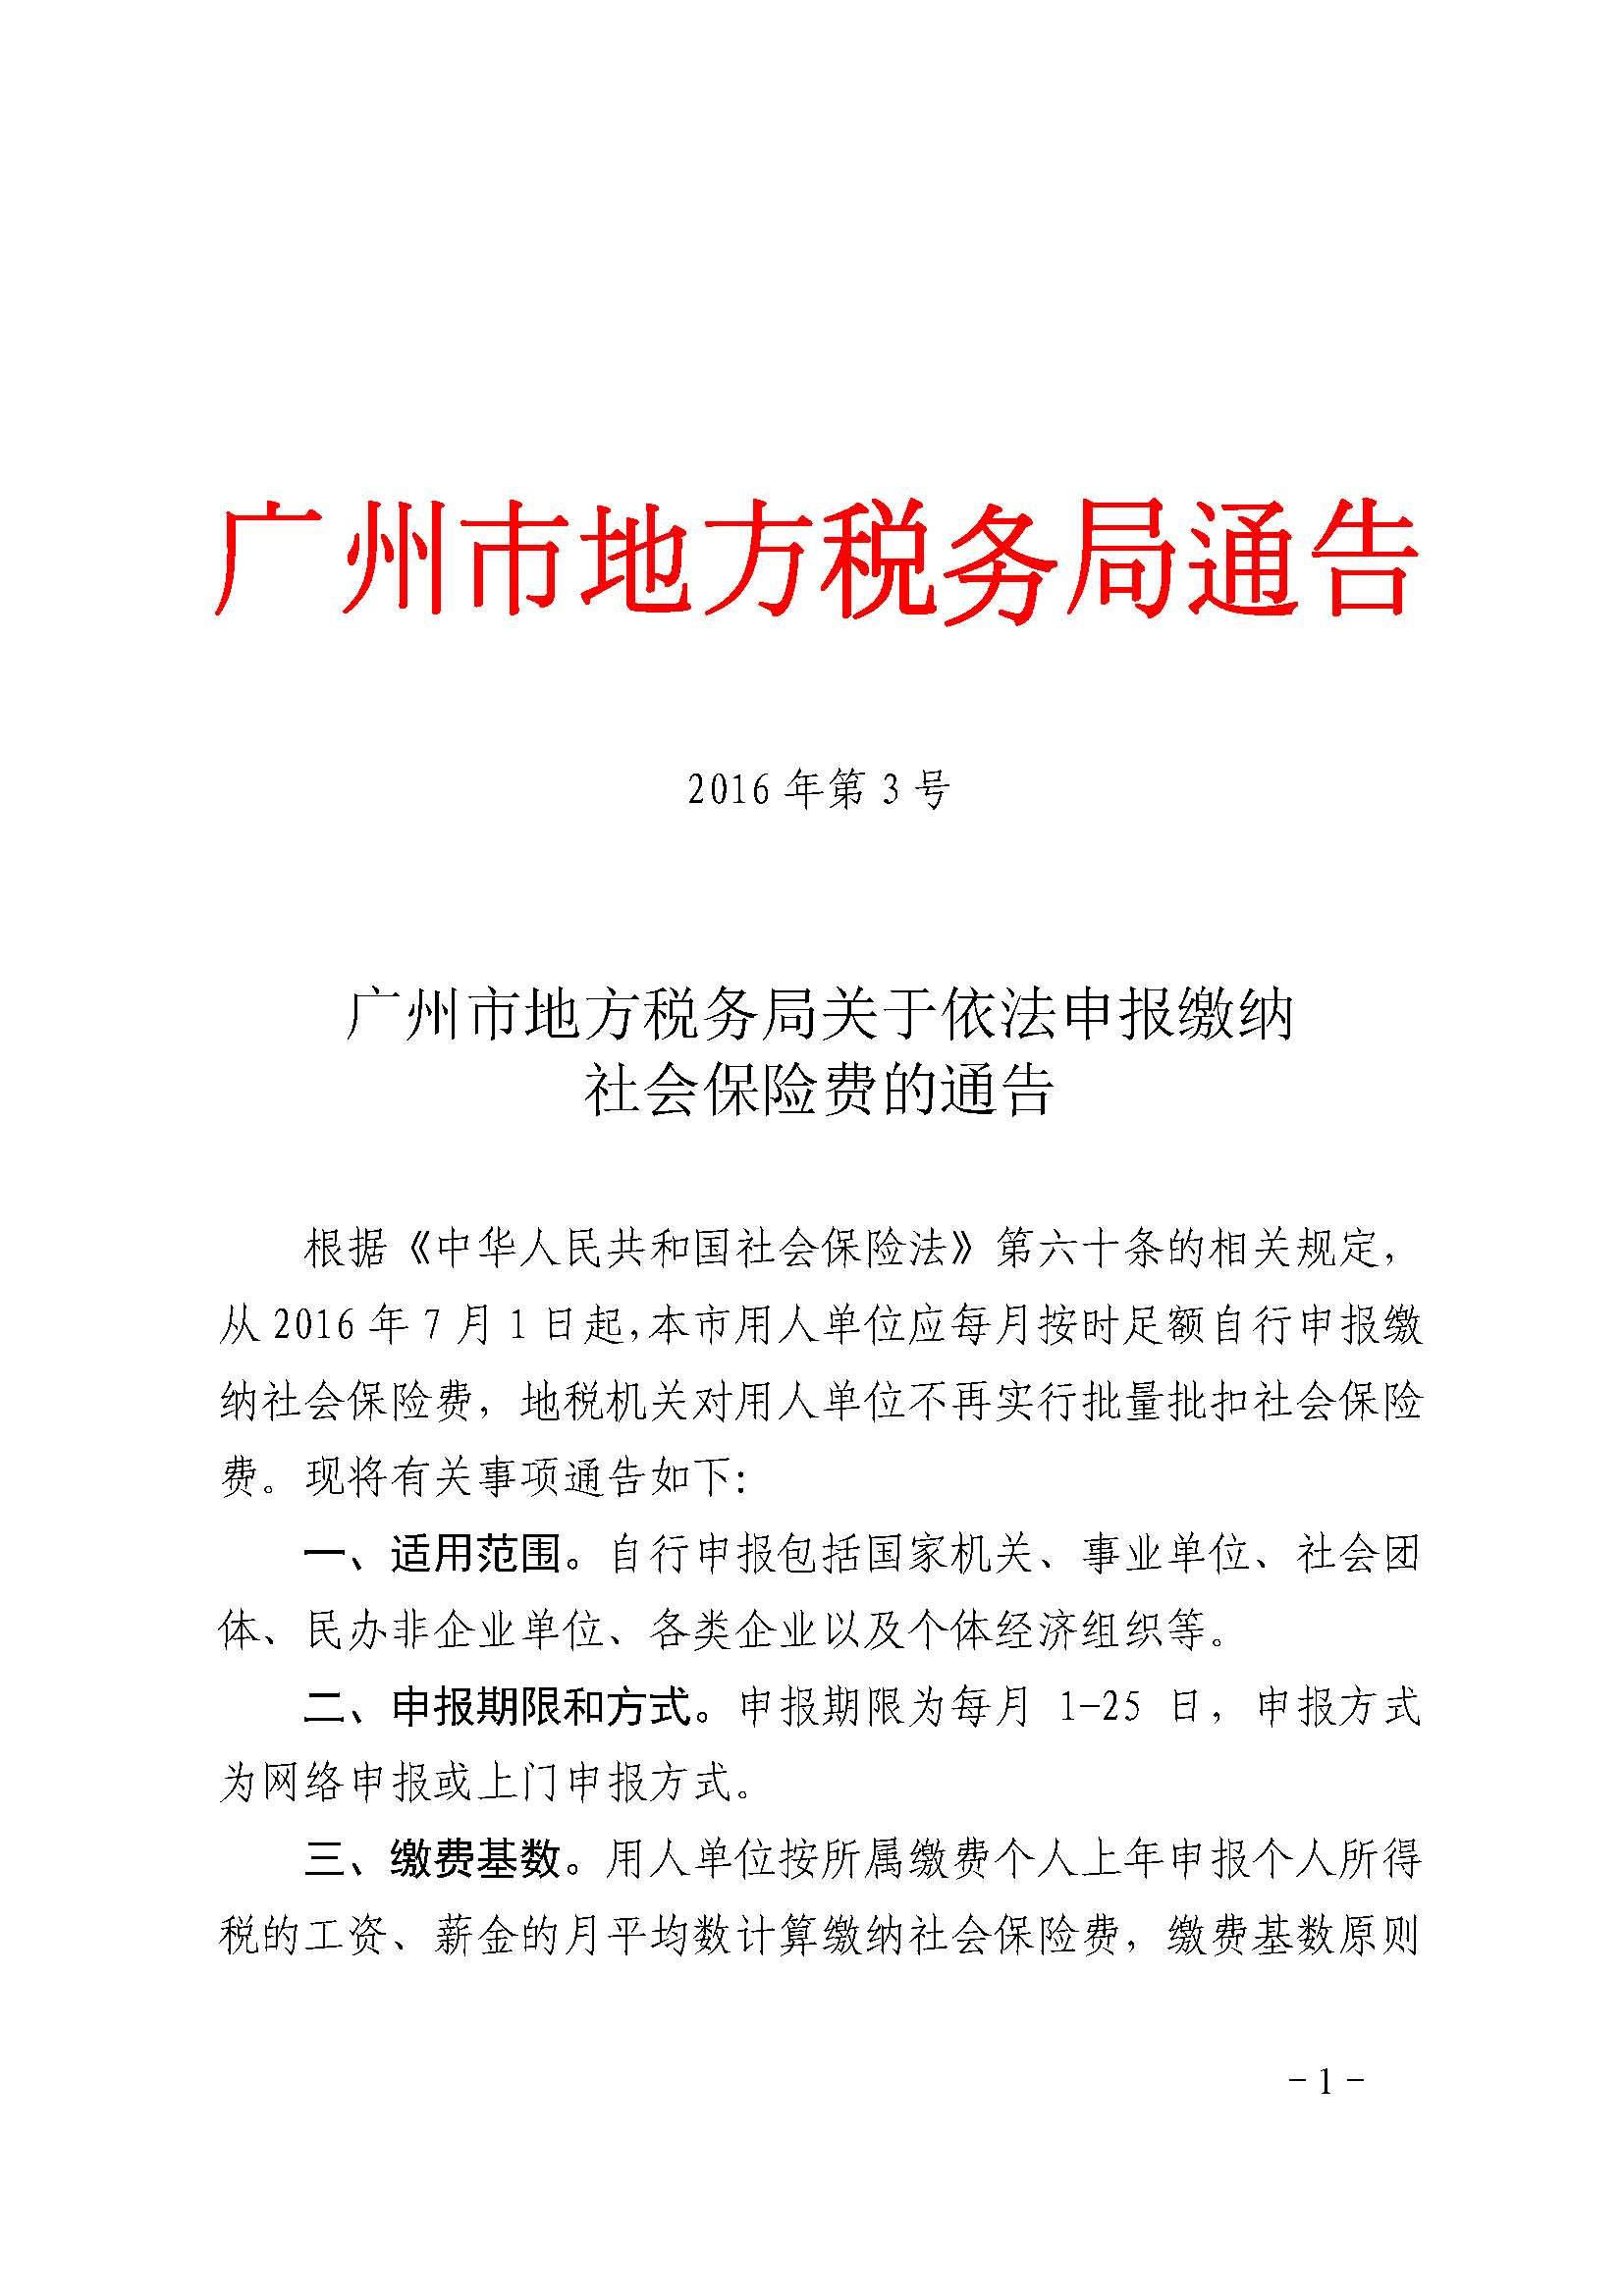 广州市地方税务局关于依法申报缴纳社会保险费的通告_页面_1